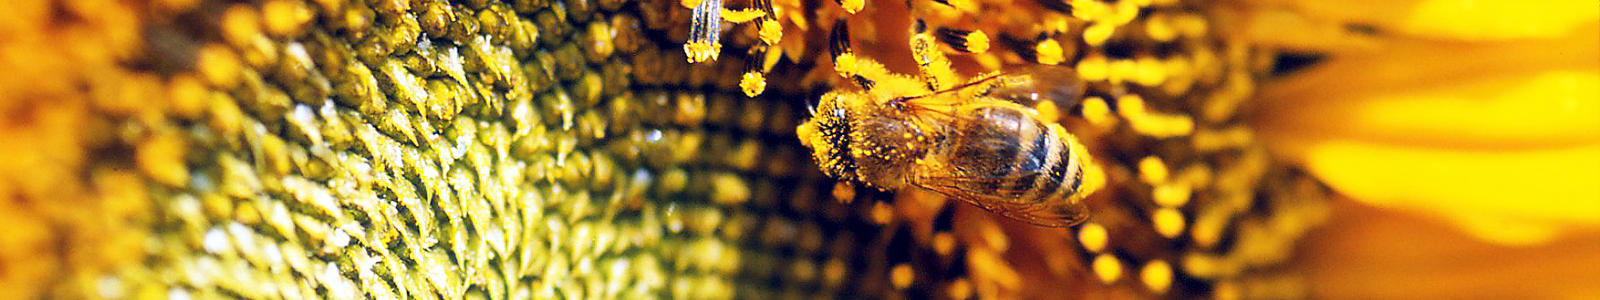 Biene auf einer Sonnenblume ©DLR